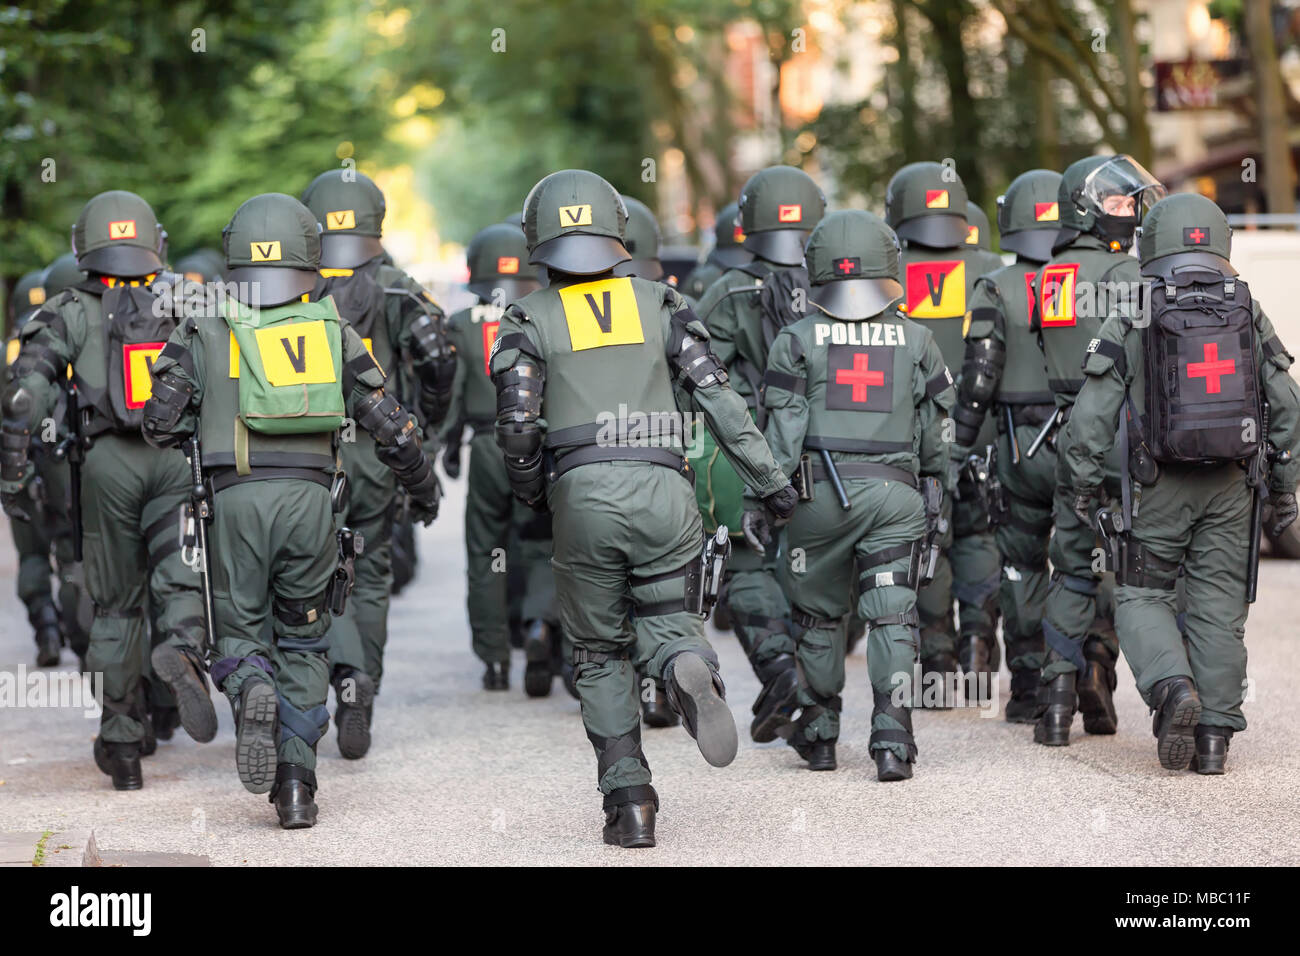 Eine Beweissicherungs- und Festnahmeeinheit der Polizei Baden-Württemberg im Einsatz während des G20-Gipfels à Hambourg Banque D'Images